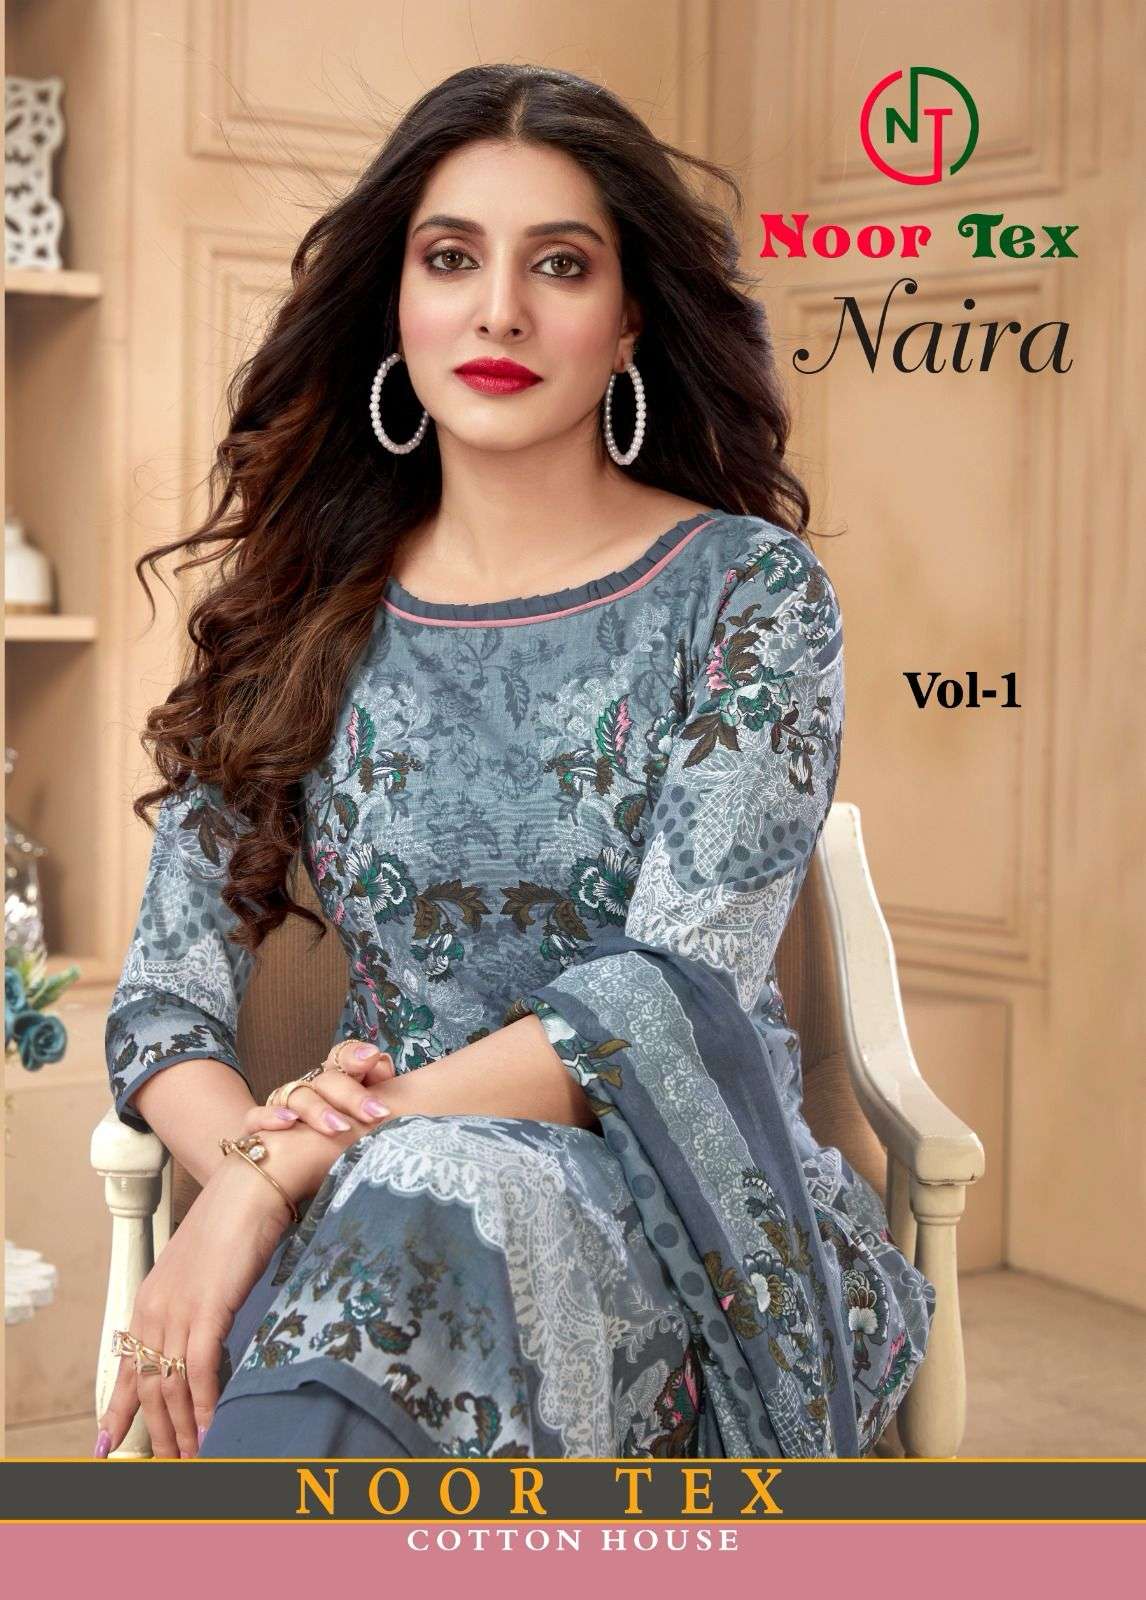 Noor Tex Naira Vol 1 Fancy Printed Cotton Dress Online Dealer In Surat